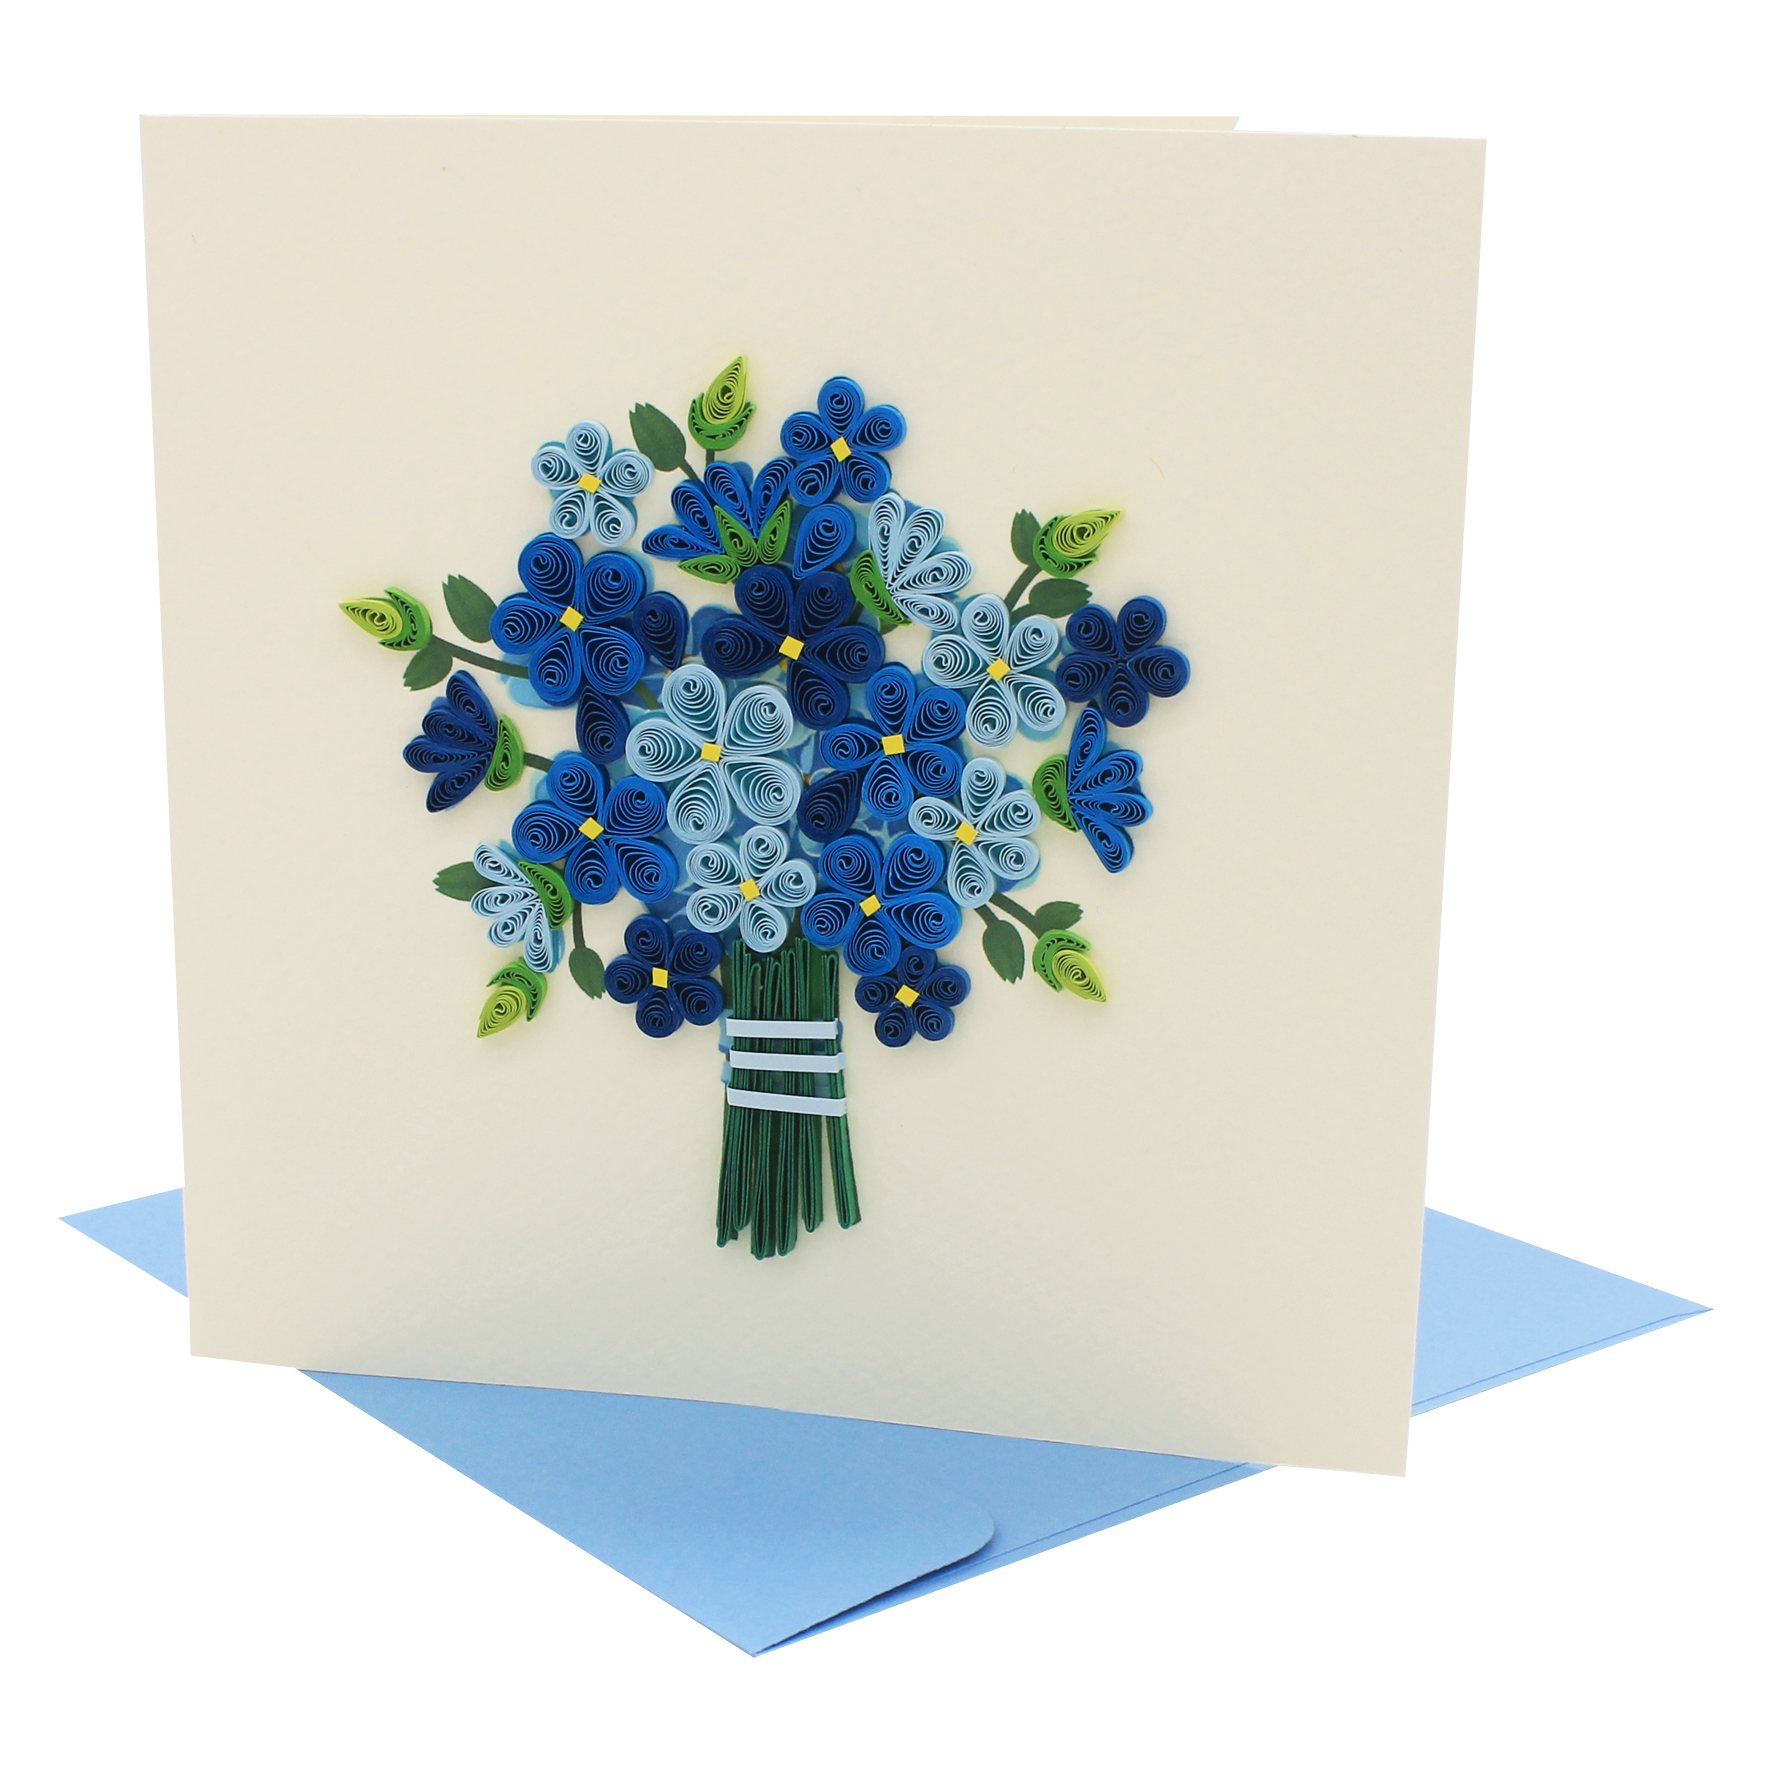 Thiệp Handmade - Thiệp Hoa lưu ly nghệ thuật giấy xoắn (Quilling Card) - Tặng Kèm Khung Giấy Để Bàn - Thiệp chúc mừng sinh nhật, kỷ niệm, tình yêu, cảm ơn...